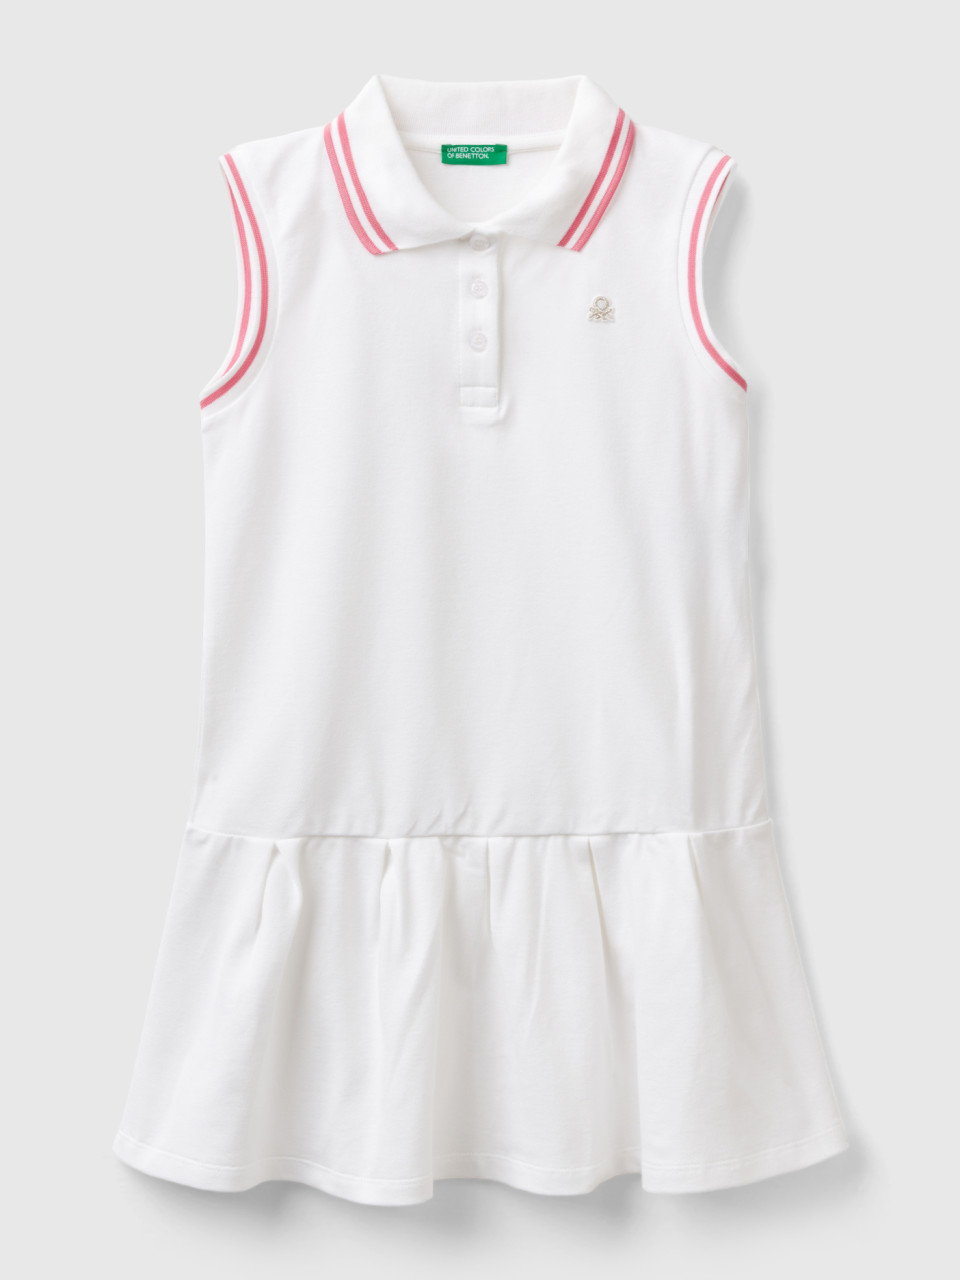 Benetton, Polo-style Dress, White, Kids